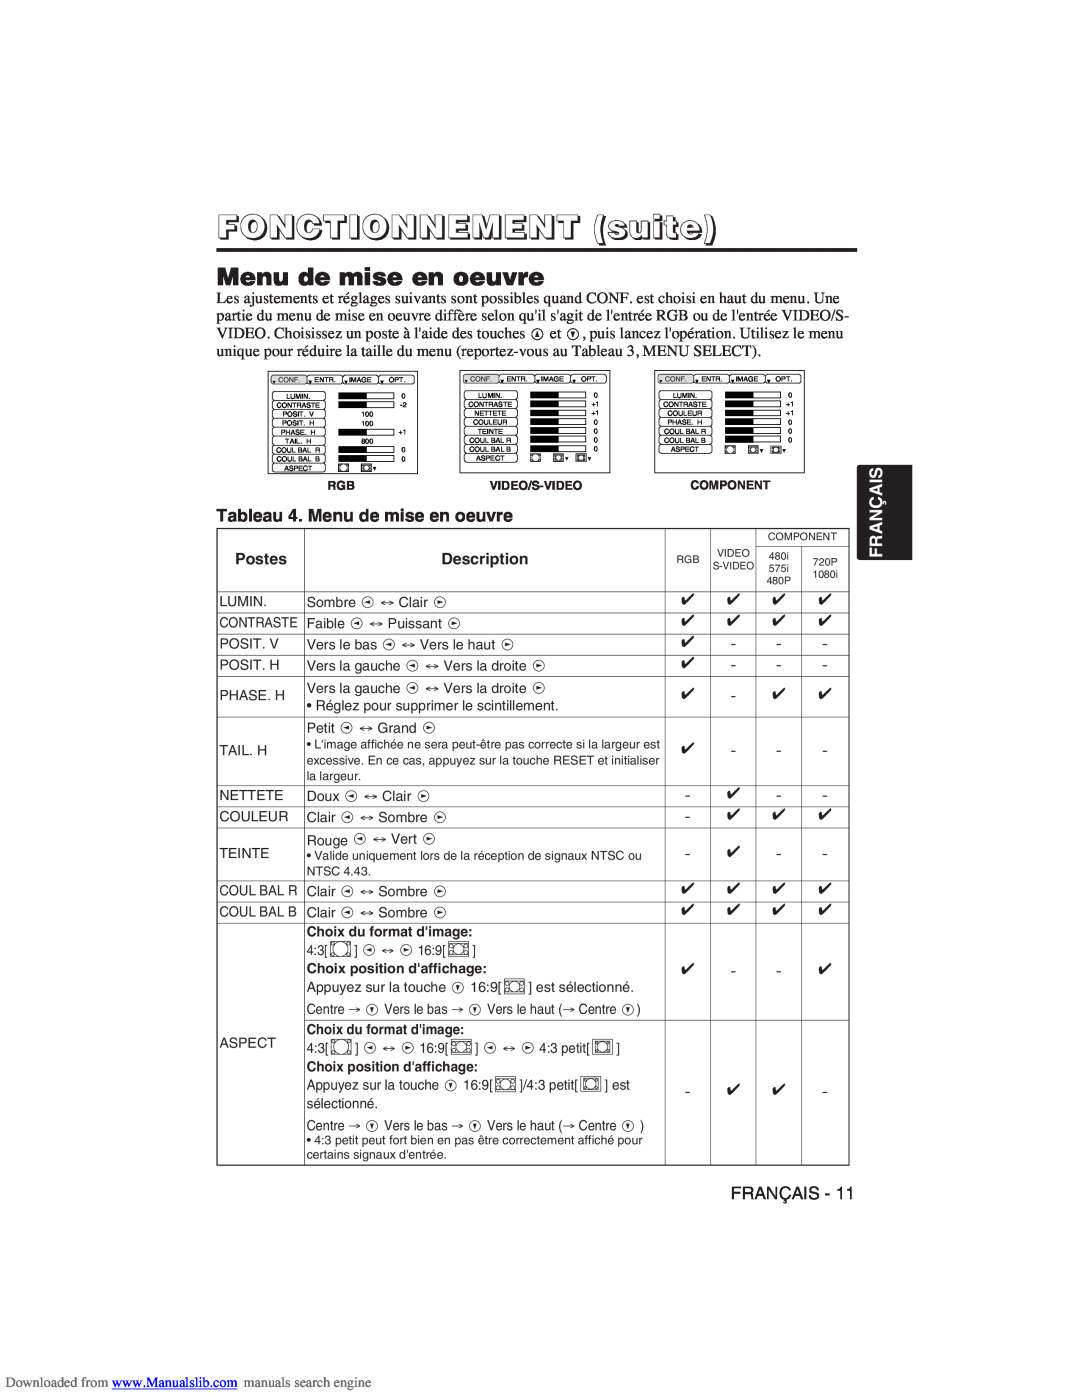 Hitachi CP-X275W user manual Tableau 4. Menu de mise en oeuvre, FONCTIONNEMENT suite 